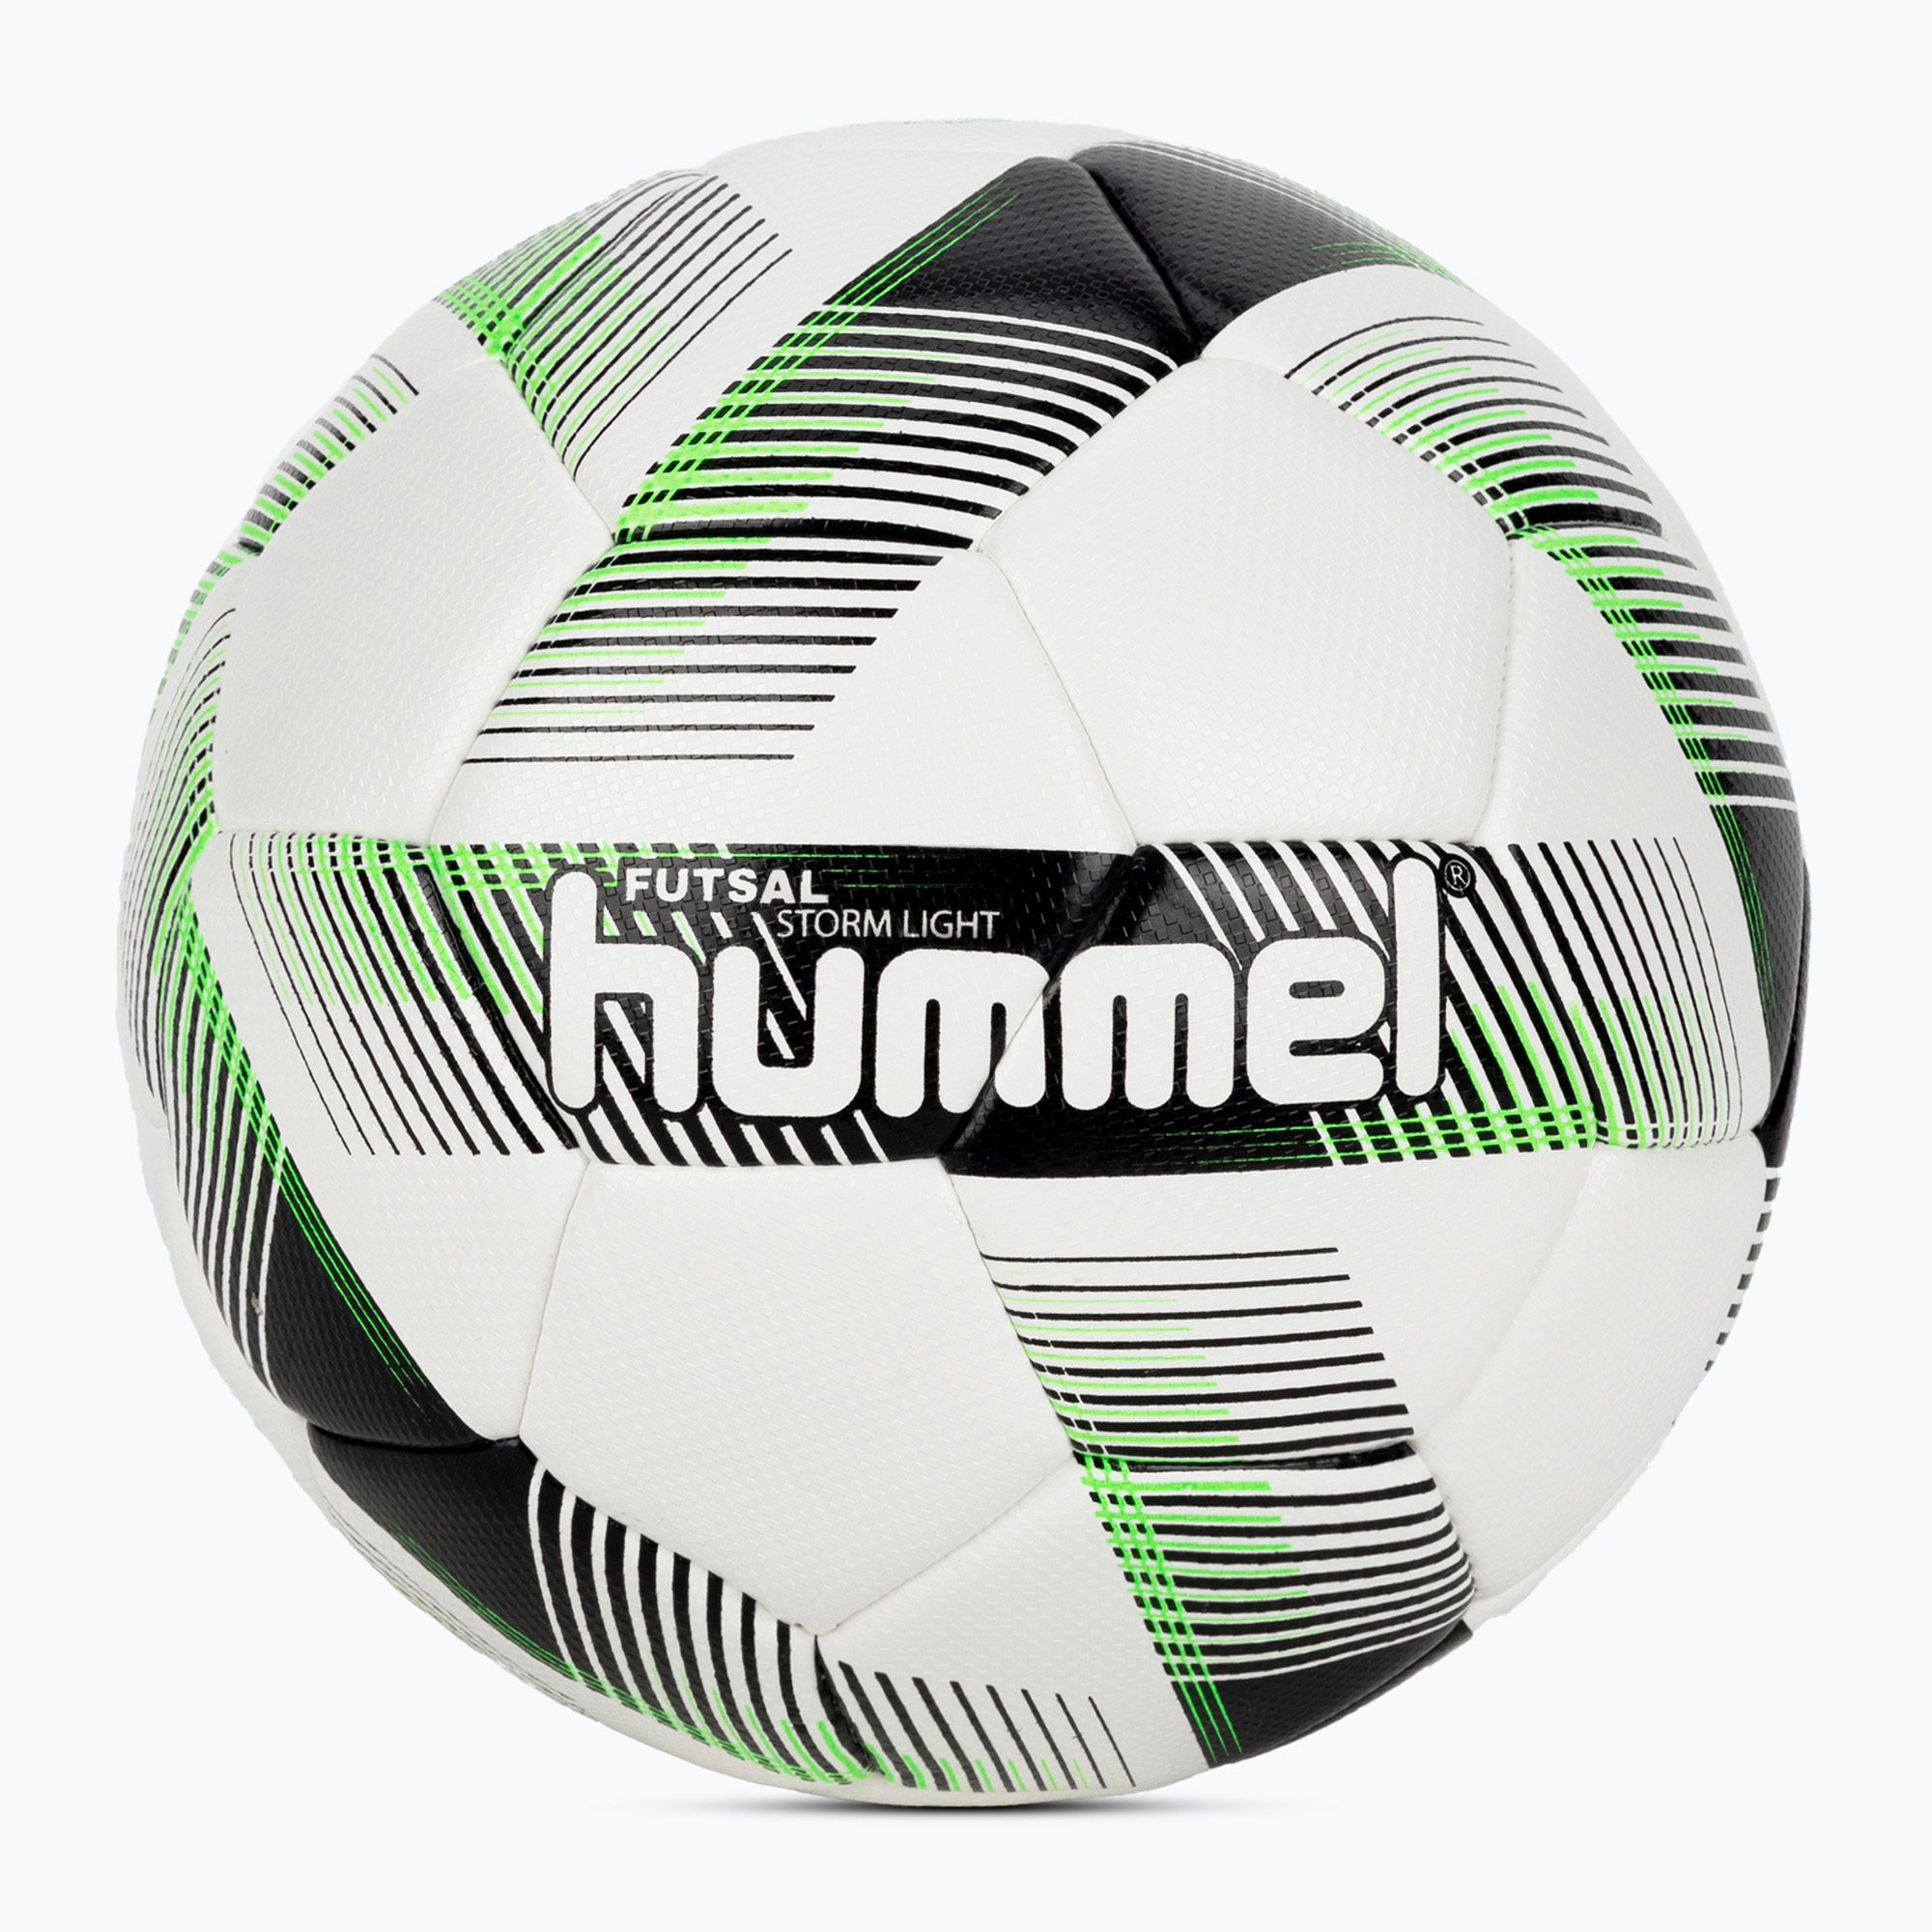 Hummel Storm Light FB футболна топка бяло/черно/зелено размер 3